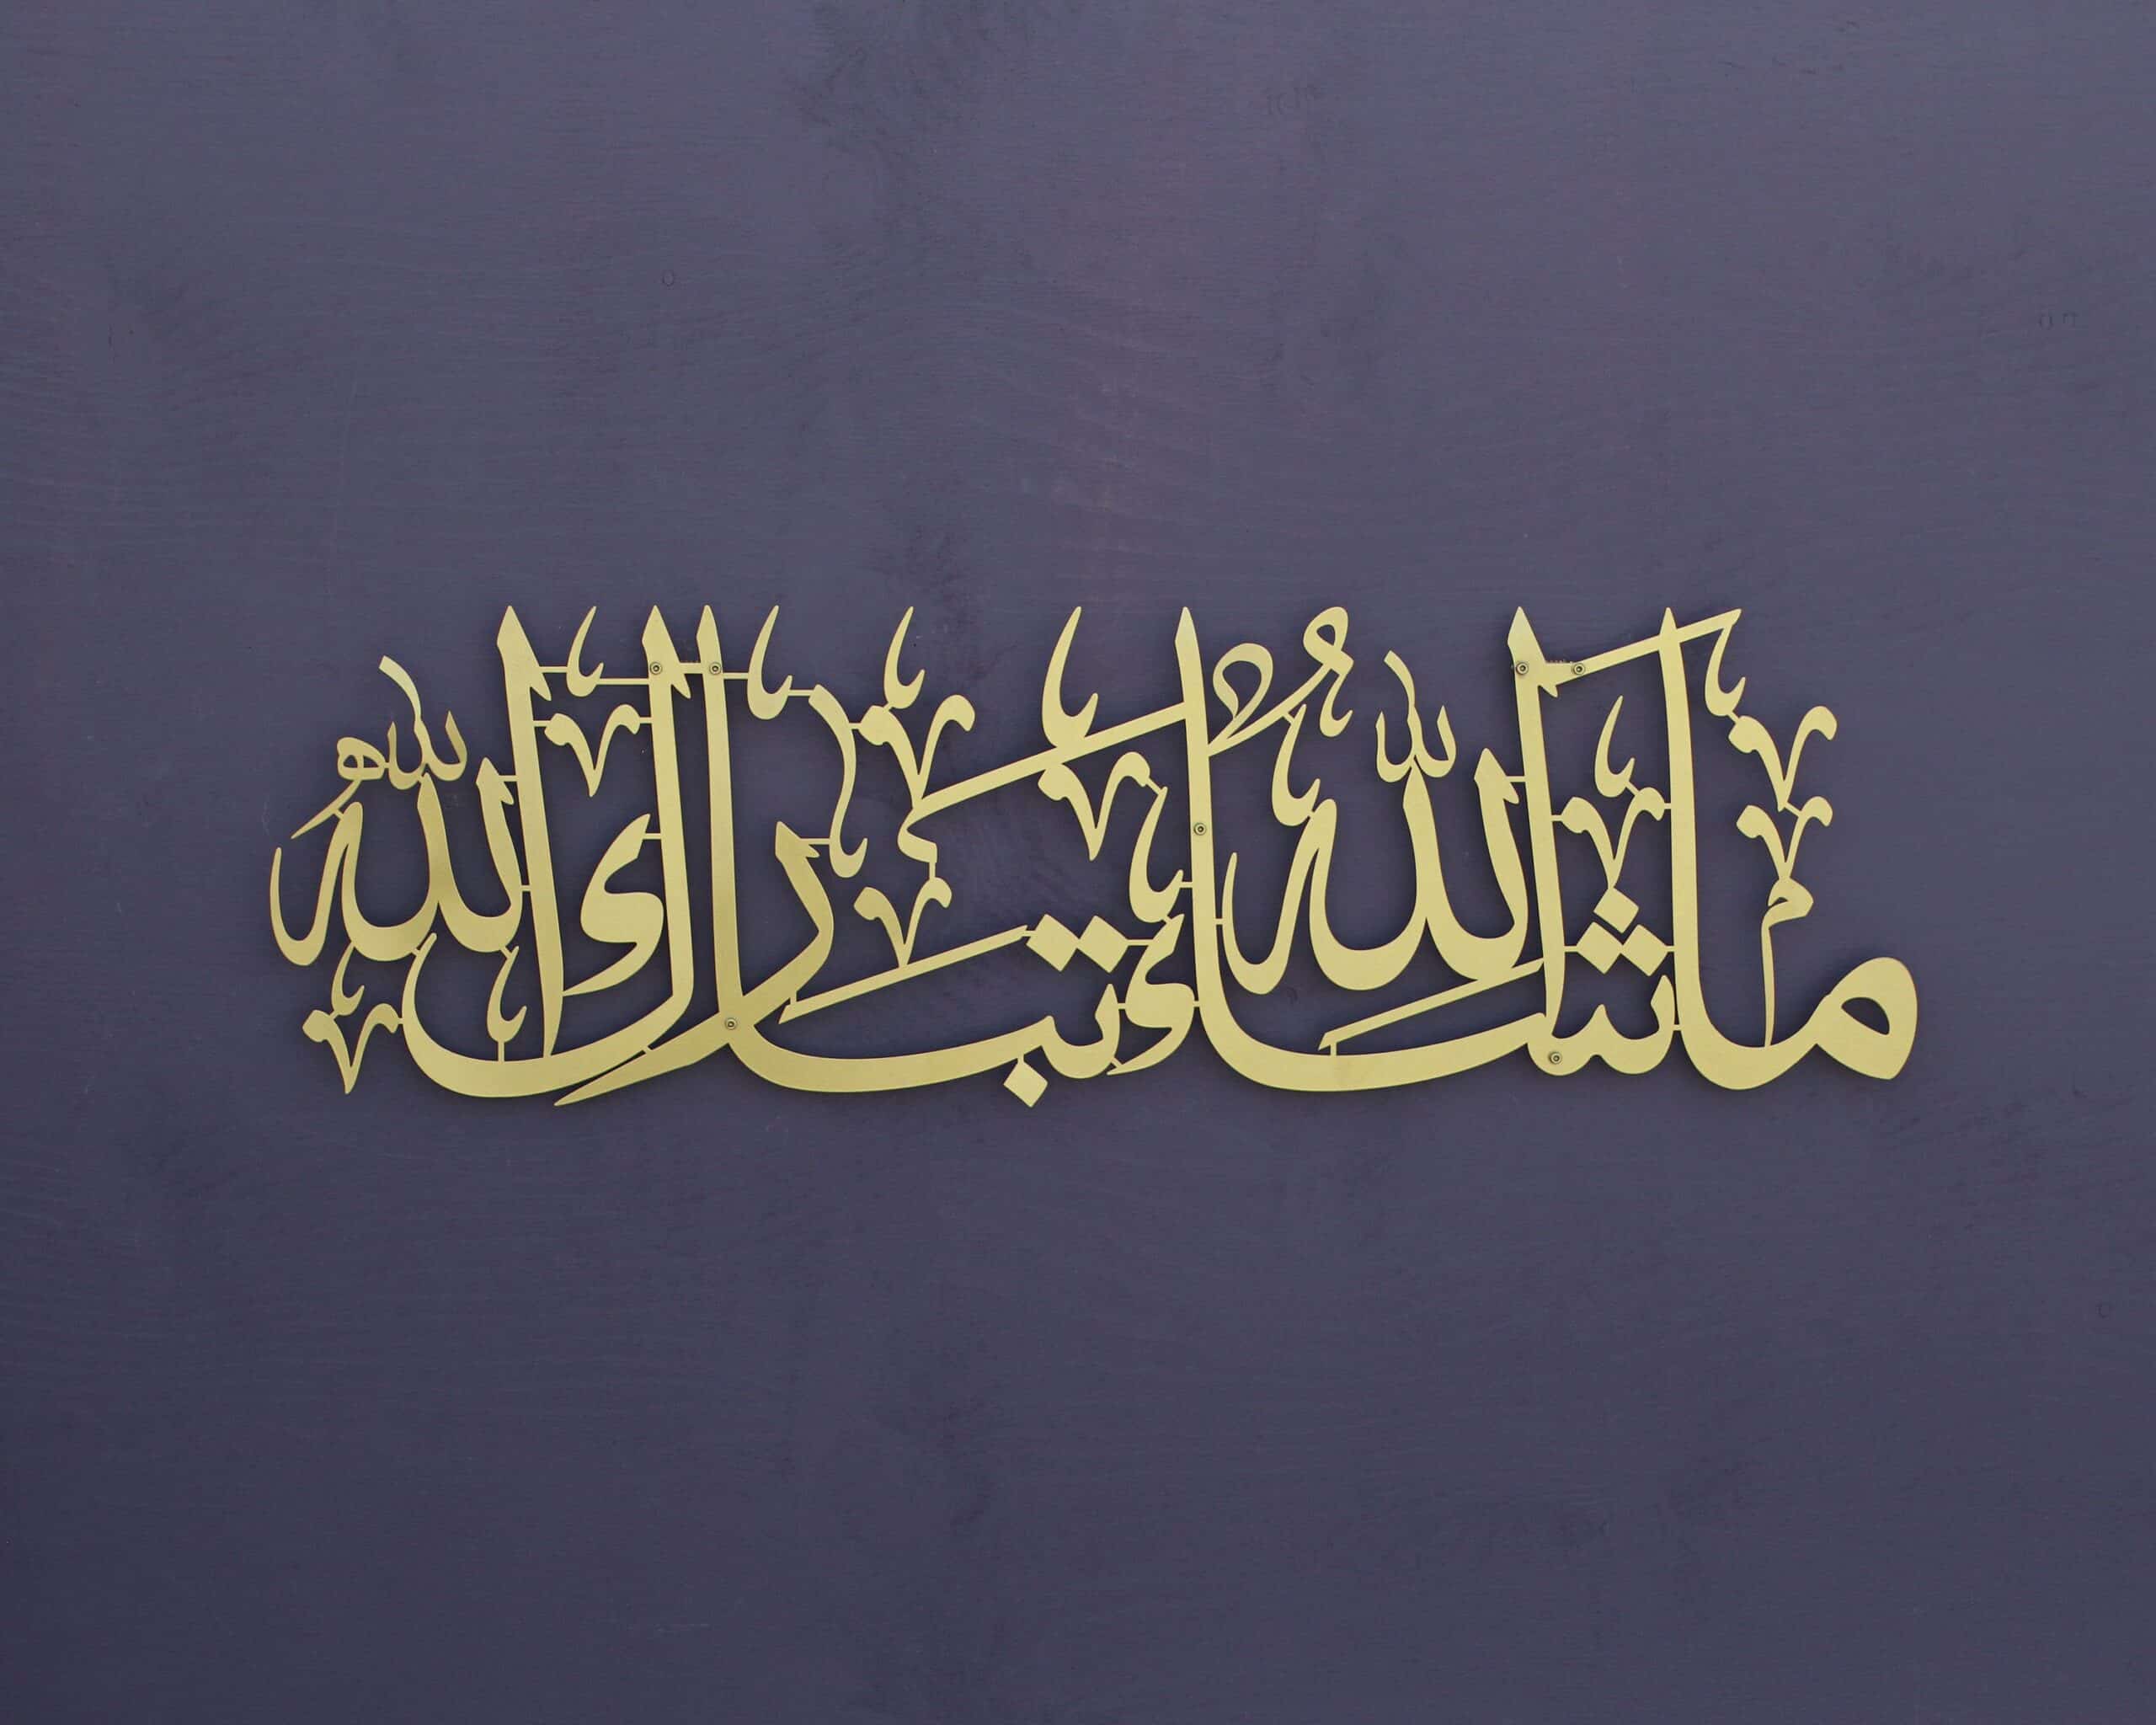 Mashallah meaning